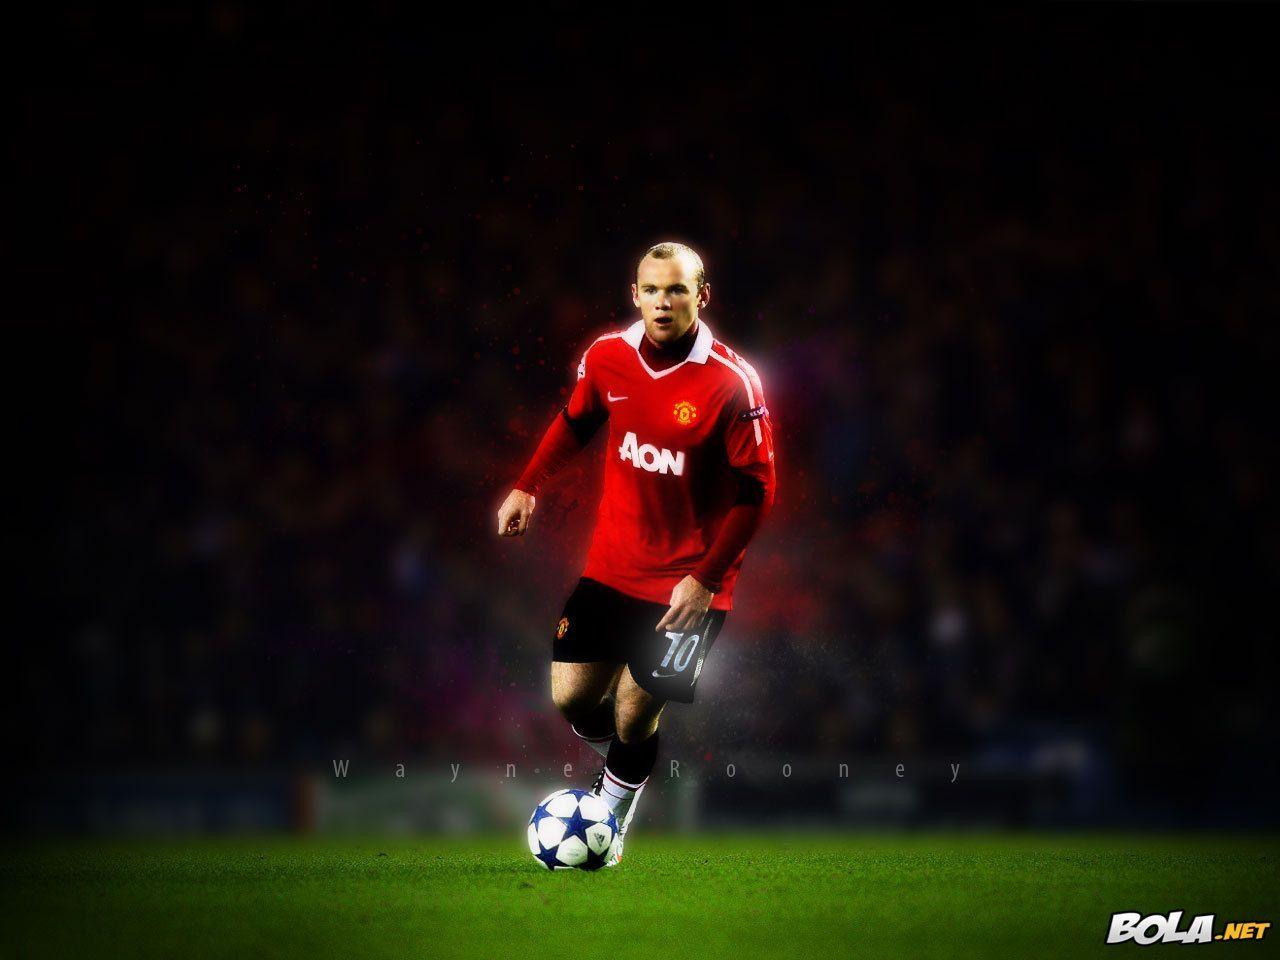 Wayne Rooney Wallpaper. Player Wallpaper. Manchester